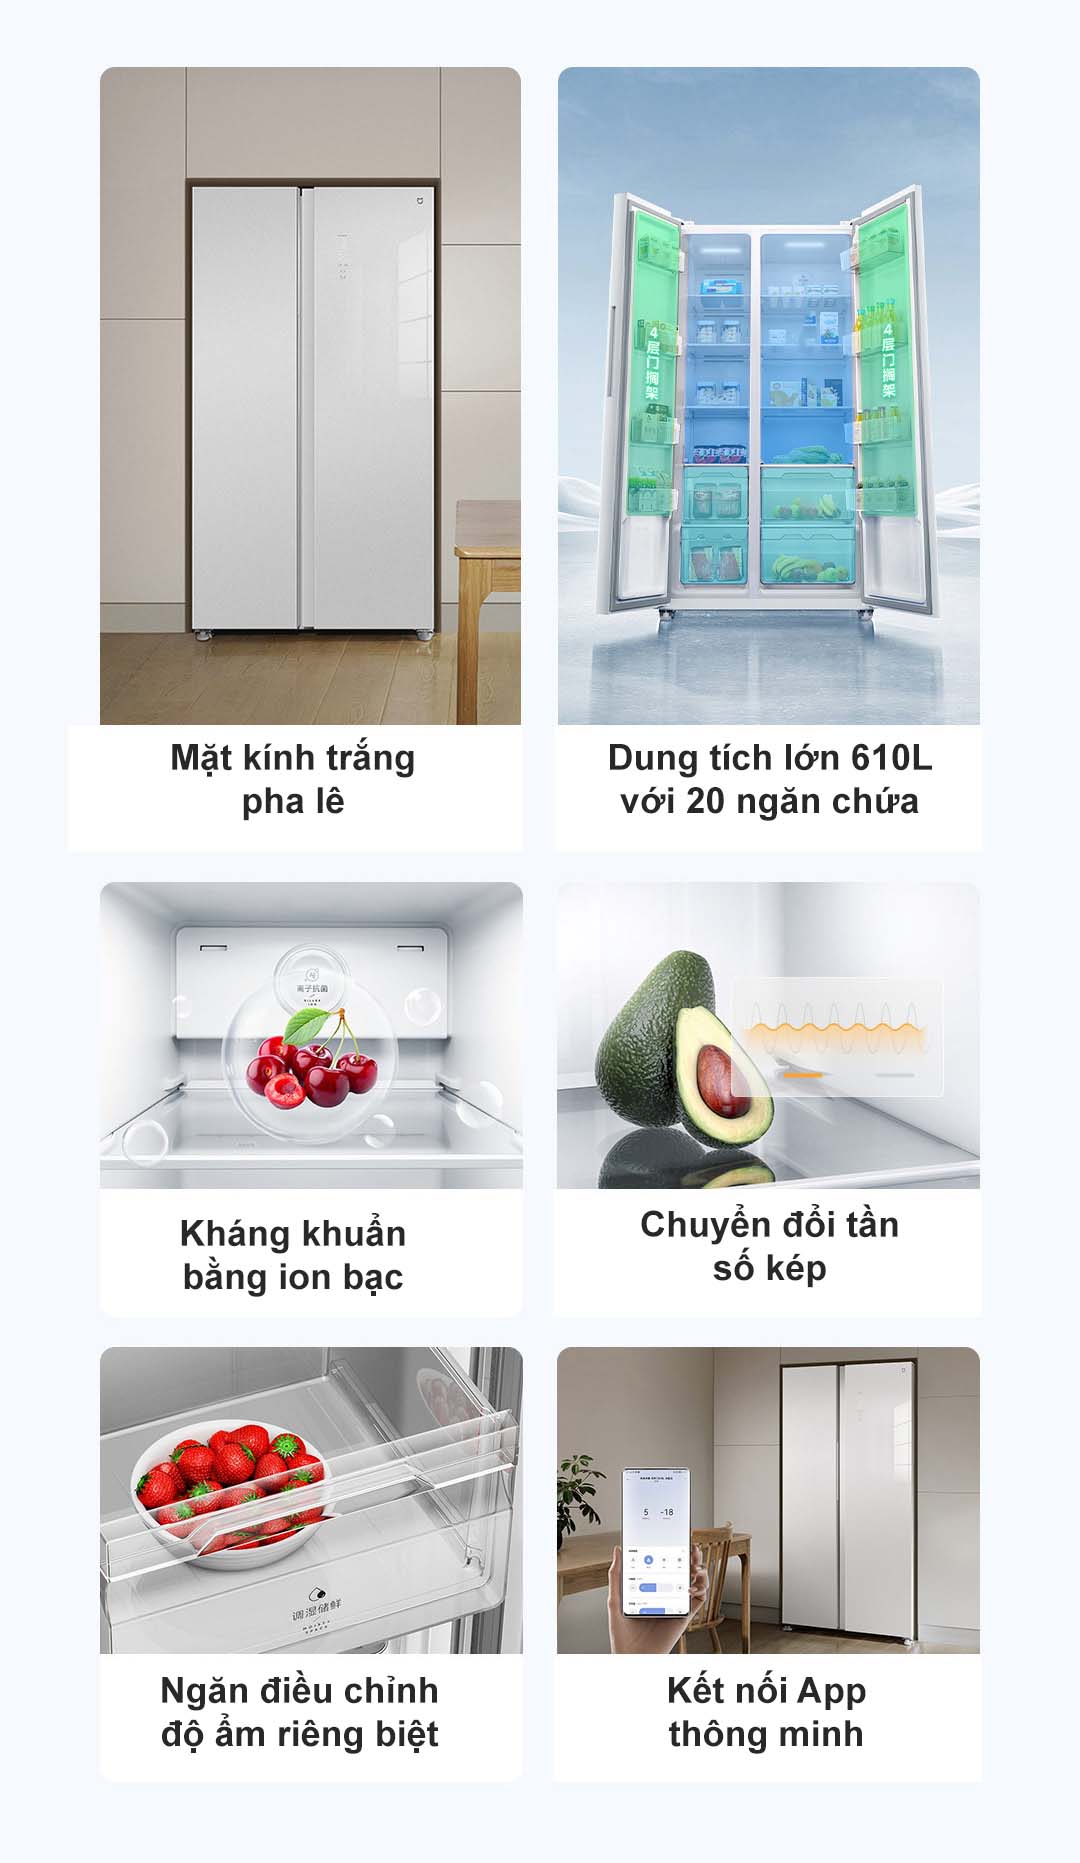 Ưu điểm nổi bật của tủ lạnh Xiaomi Mijia 610L 2 cánh